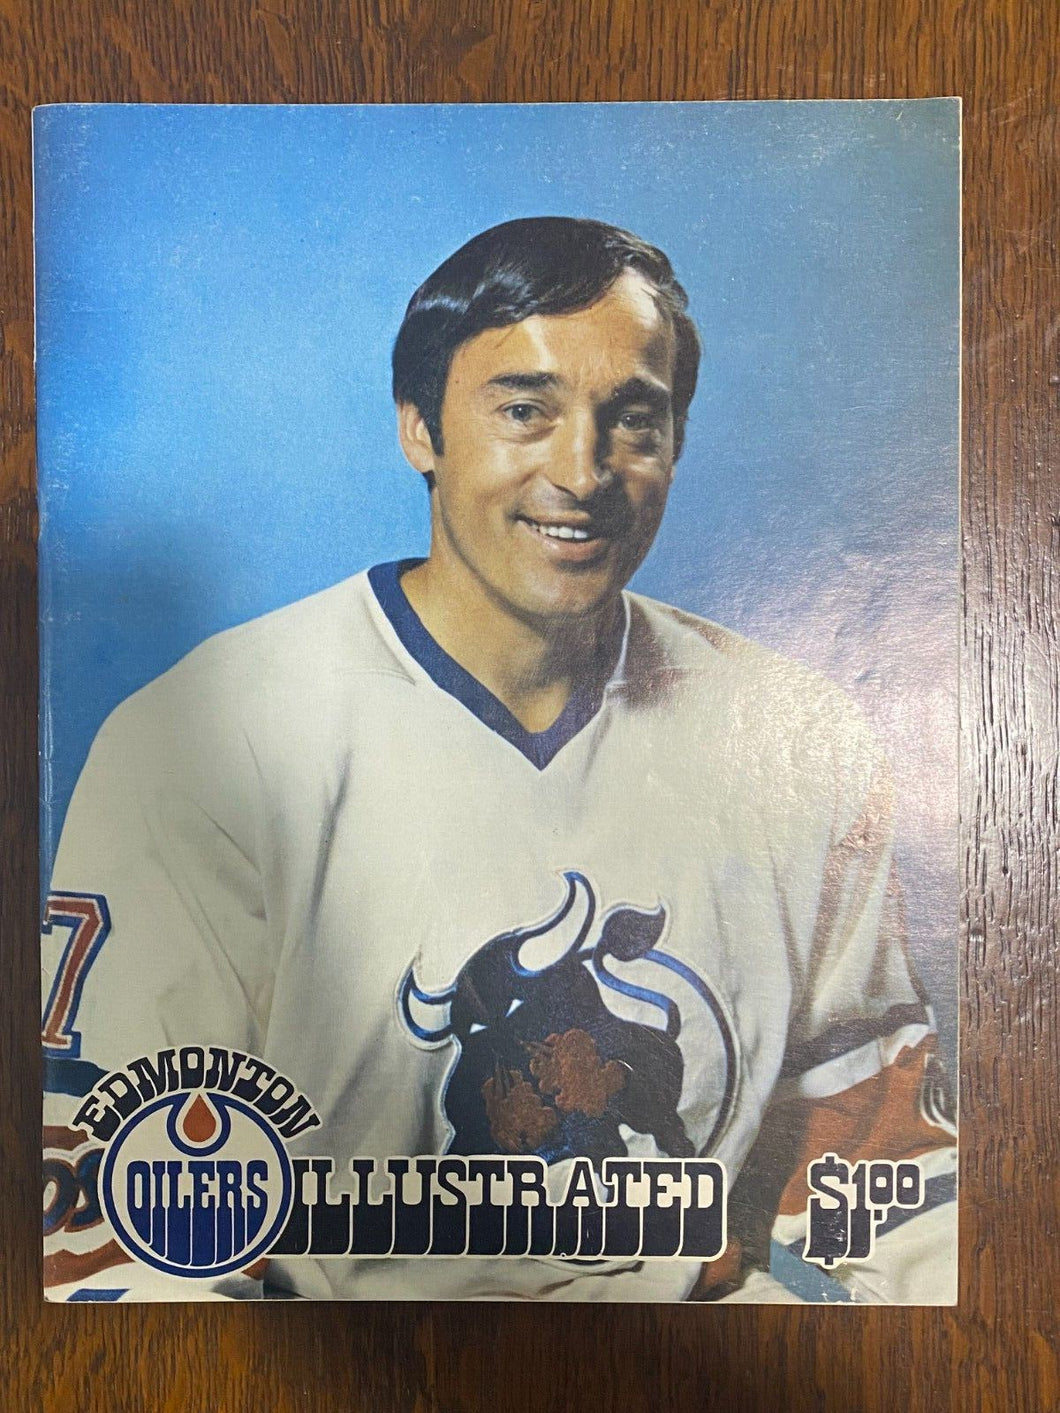 1974 Toronto Toros Edmonton Oilers Program